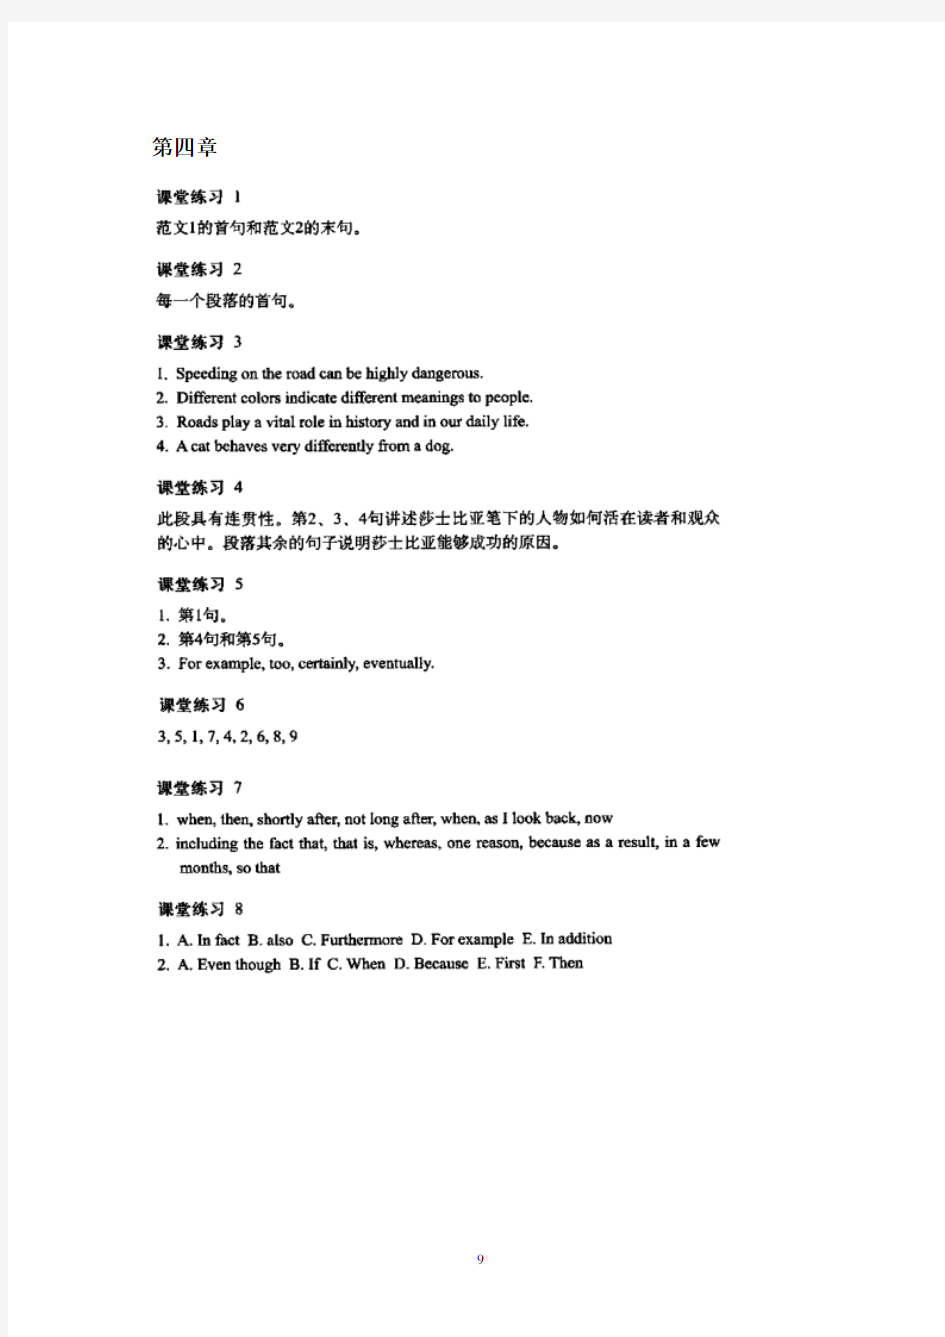 英语写作手册_中文版_课后习题答案(第四章)